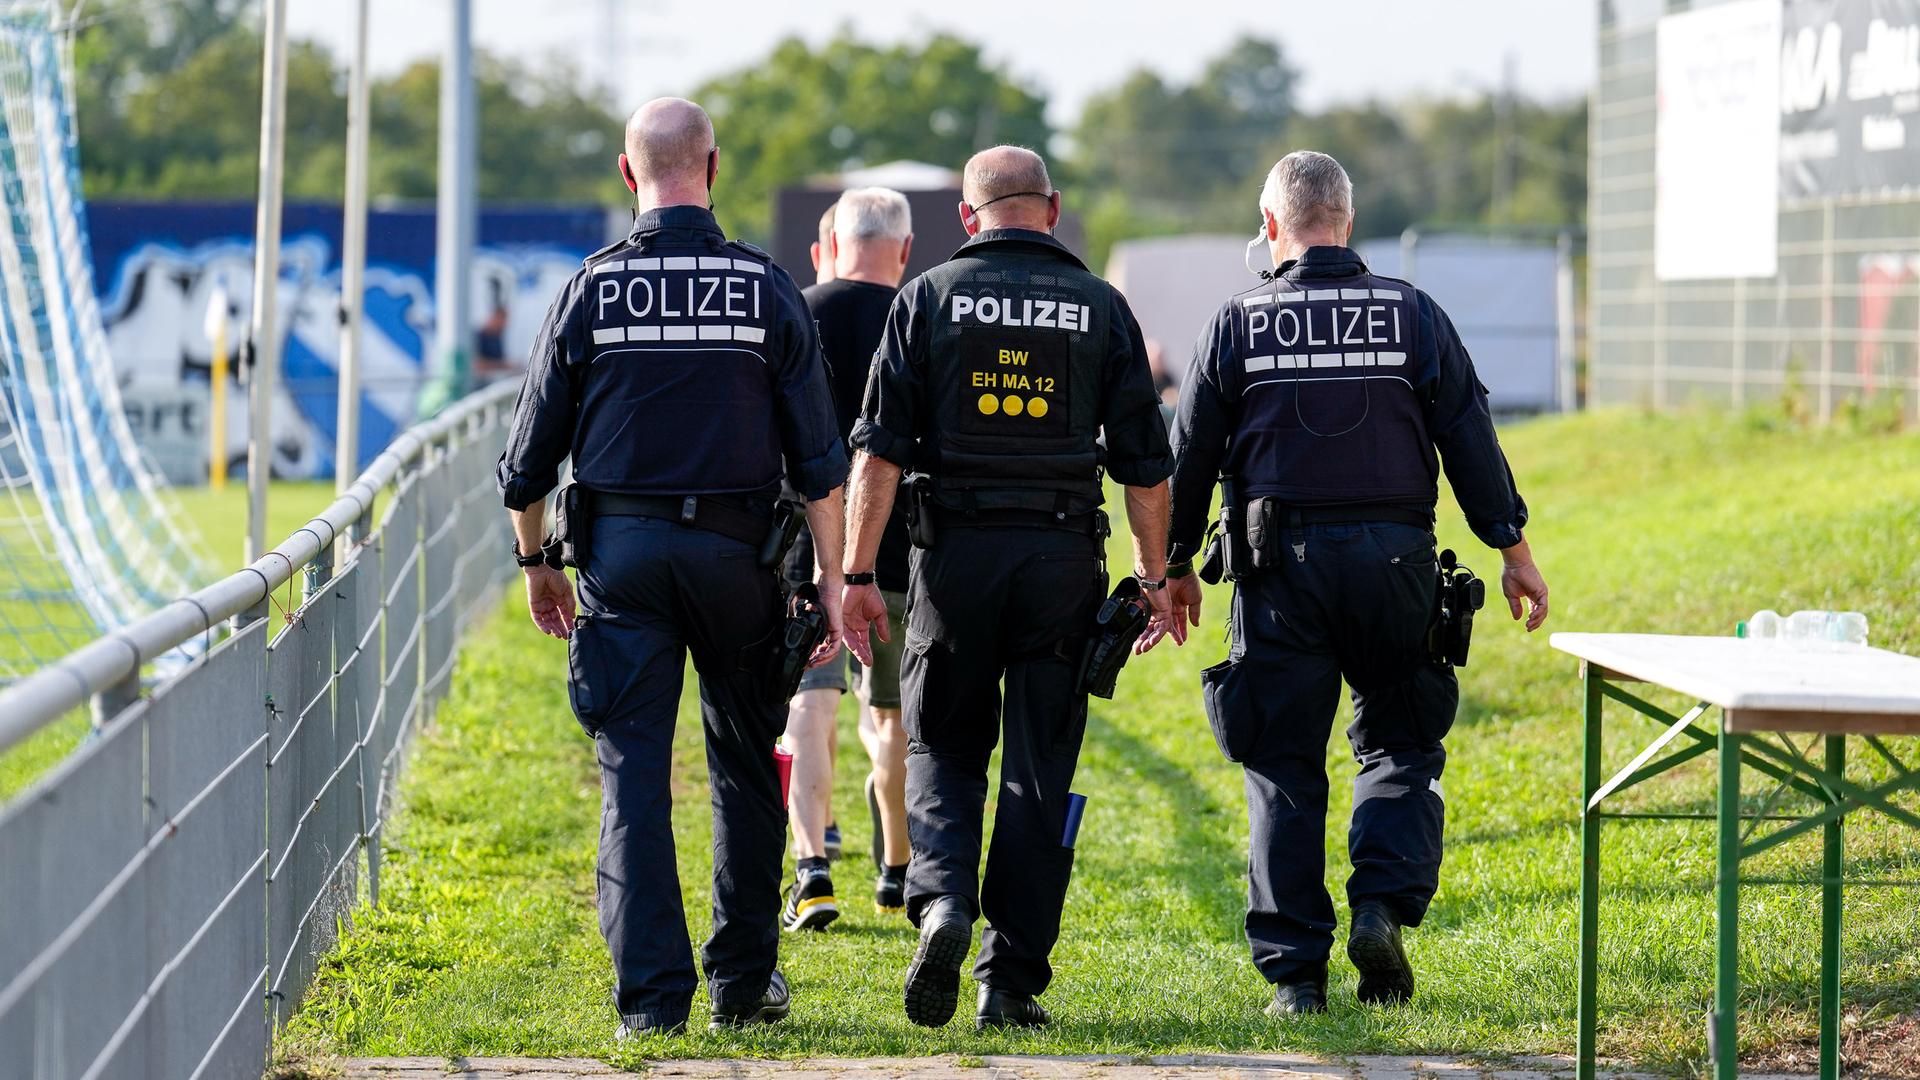 Polizei im Einsatz im Stadion, drei Polizisten laufen auf einem Sportplatz.